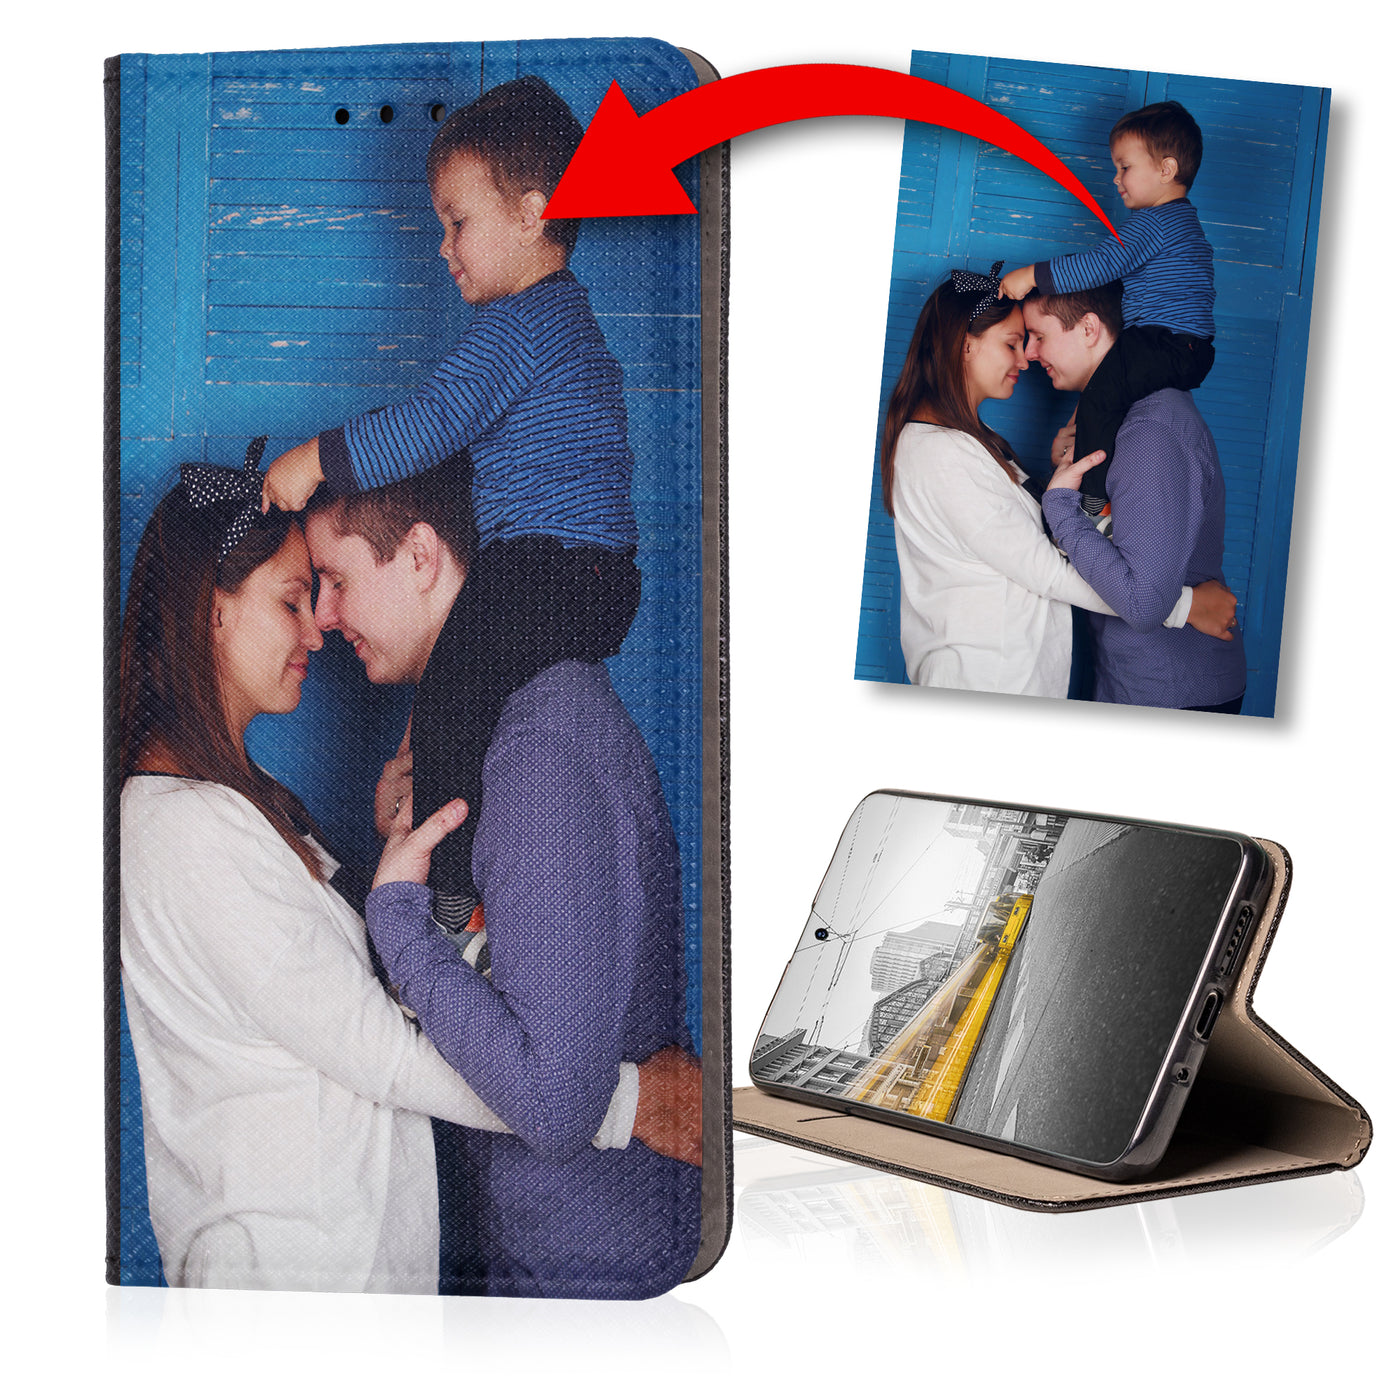 Handyhülle für Huawei P8 Lite 2015 personalisierte Hülle mit eigenem Bild Motiv Design Smart Magnet Klapphülle